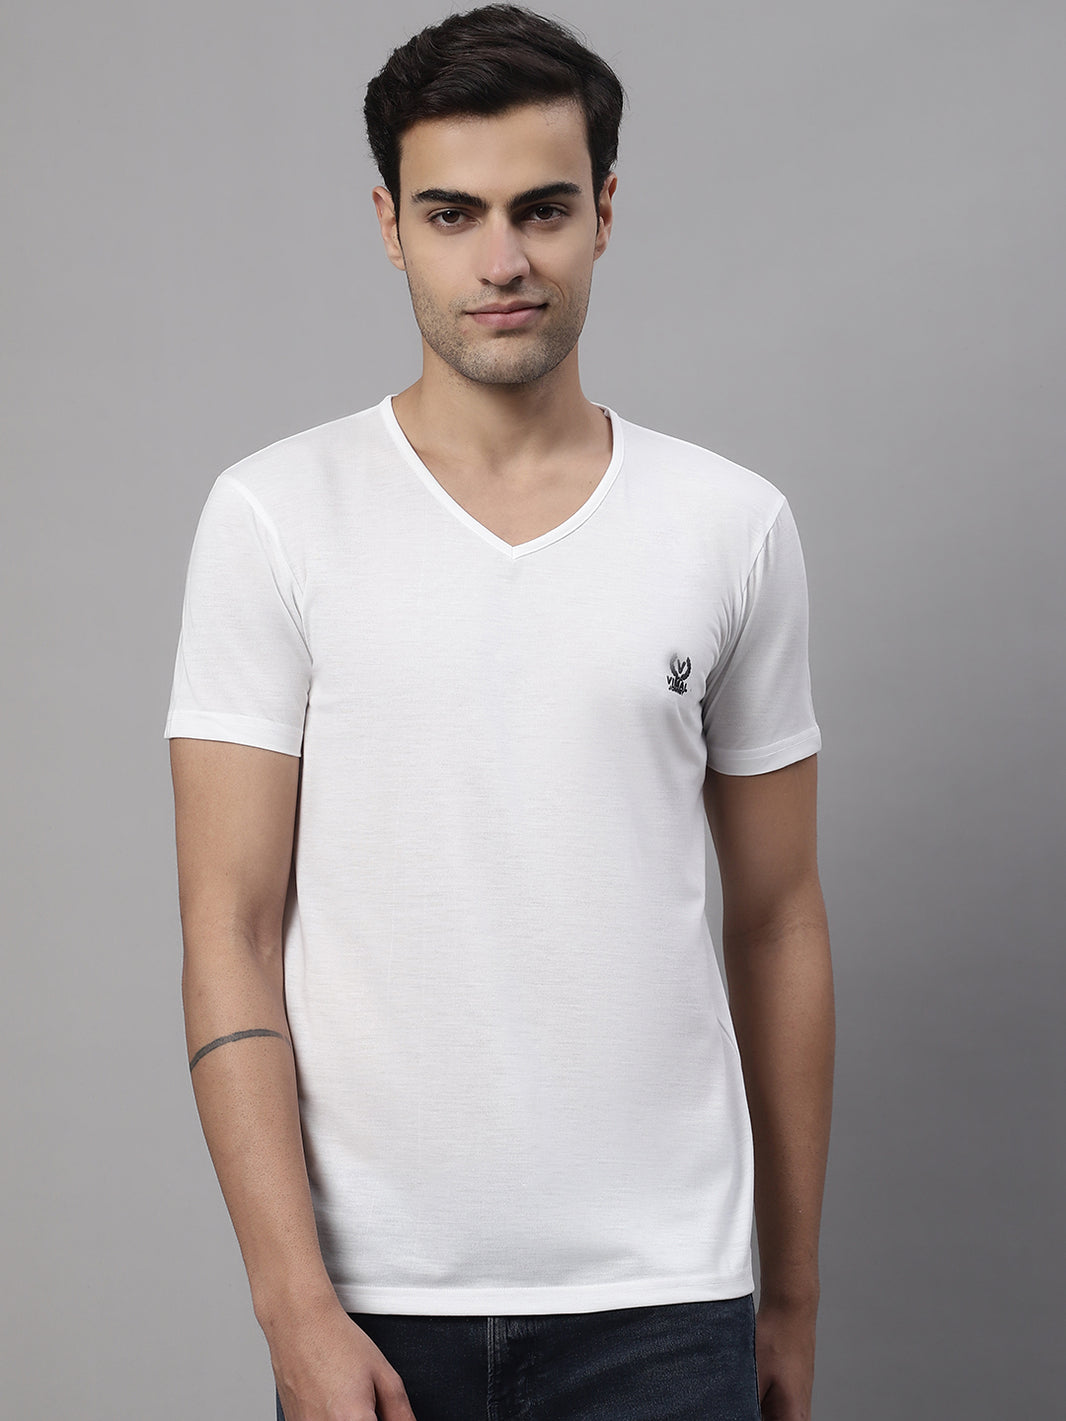 Vimal Jonney V Neck Cotton Solid White T-Shirt for Men